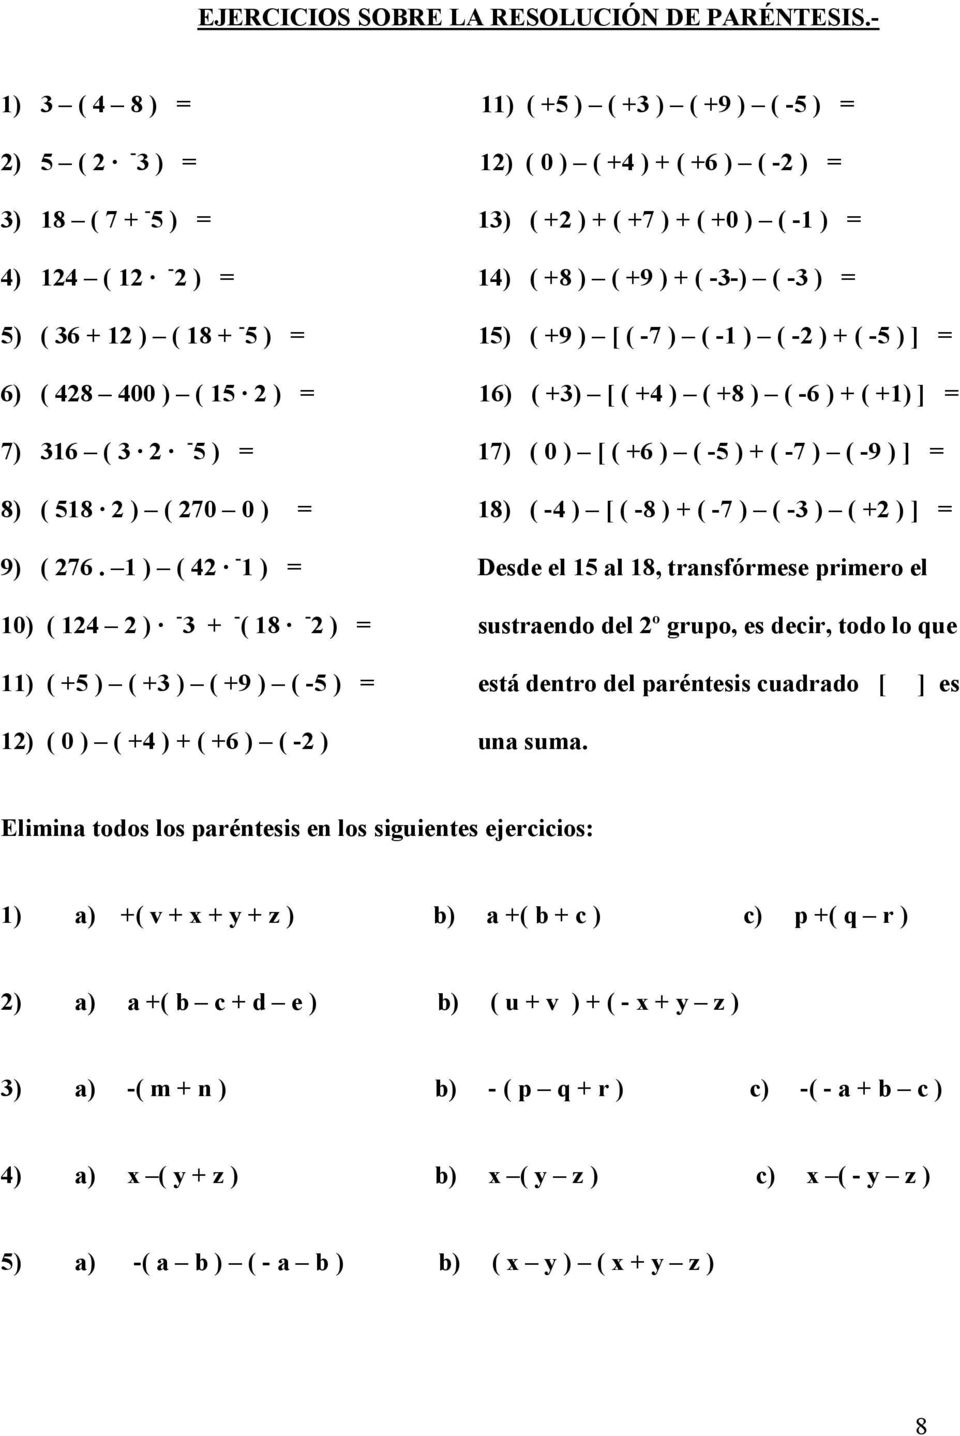 -3-) ( -3 ) = 5) ( 36 + 12 ) ( 18 + - 5 ) = 15) ( +9 ) [ ( -7 ) ( -1 ) ( -2 ) + ( -5 ) ] = 6) ( 428 400 ) ( 15 2 ) = 16) ( +3) [ ( +4 ) ( +8 ) ( -6 ) + ( +1) ] = 7) 316 ( 3 2-5 ) = 17) ( 0 ) [ ( +6 )